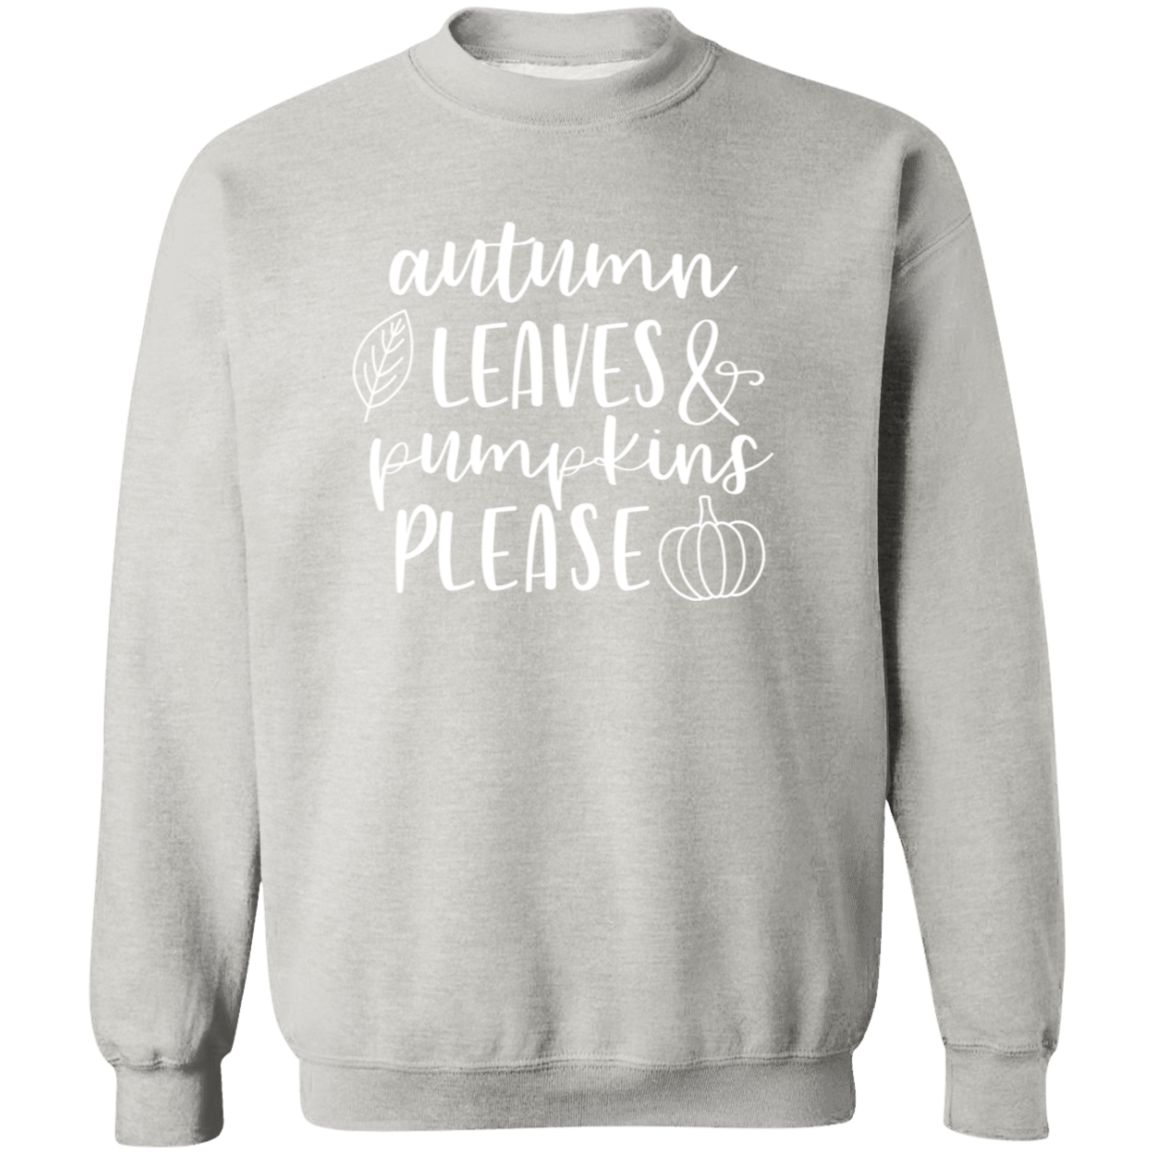 Autumn Leaves and Pumpkins Please Sweatshirt